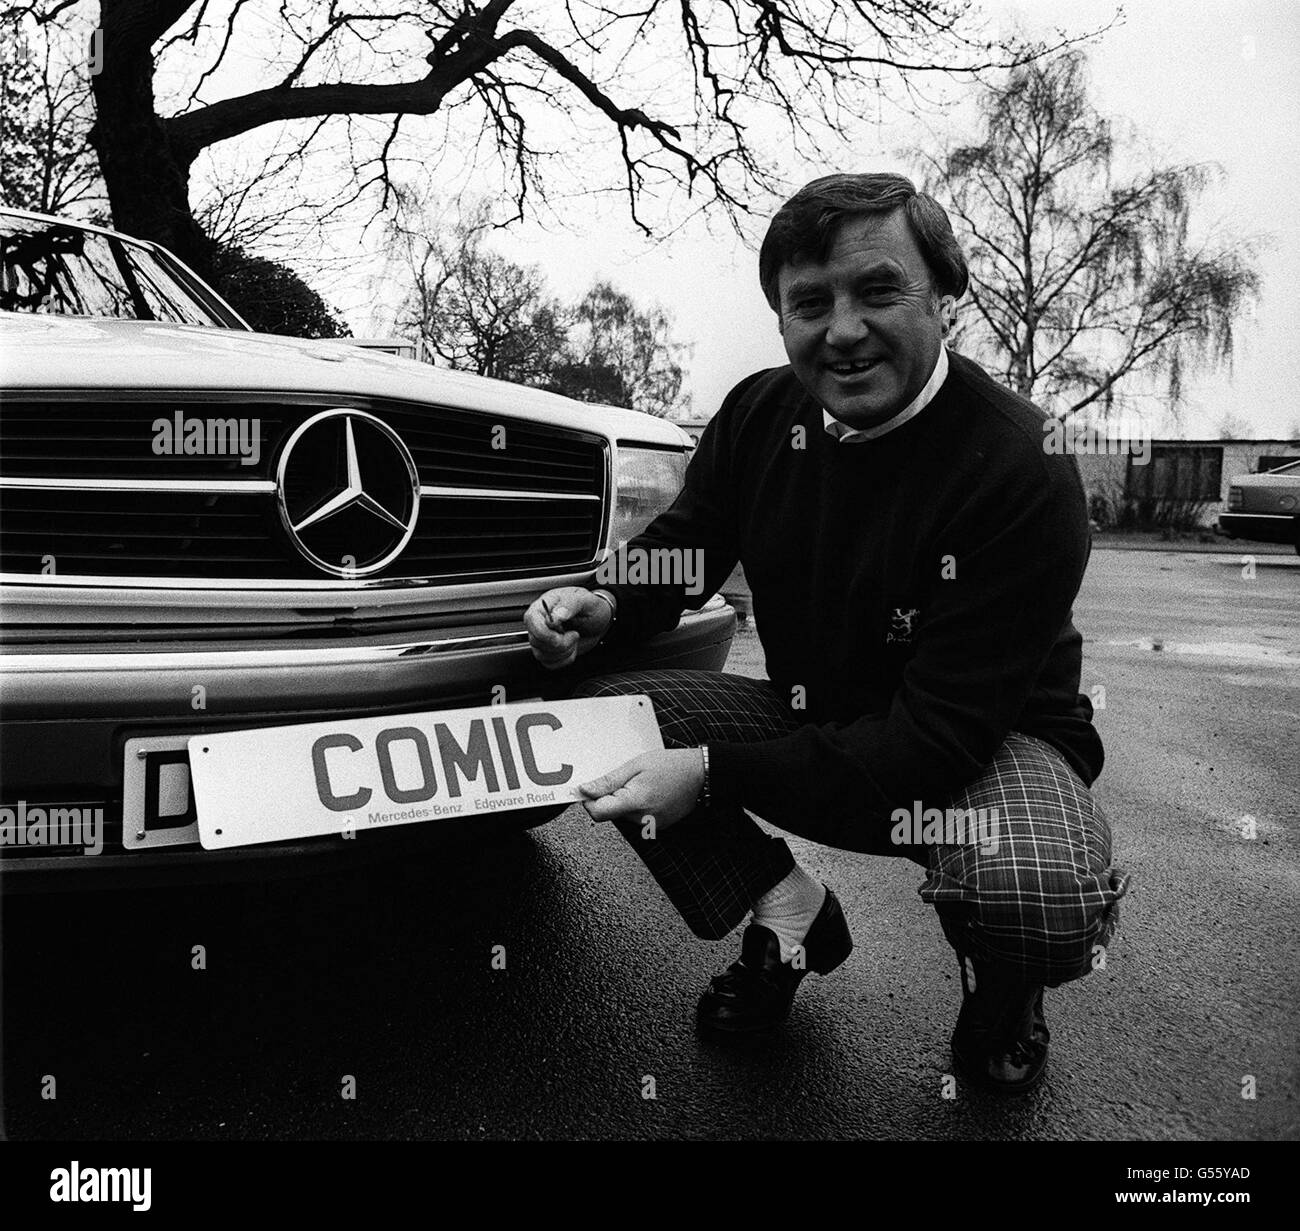 Comediante Jimmy Tarbuck. El comediante Jimmy Tarbuck con su famoso número de placa 'cómic' que está poniendo en su nuevo Mercedes-Benz. Foto de stock